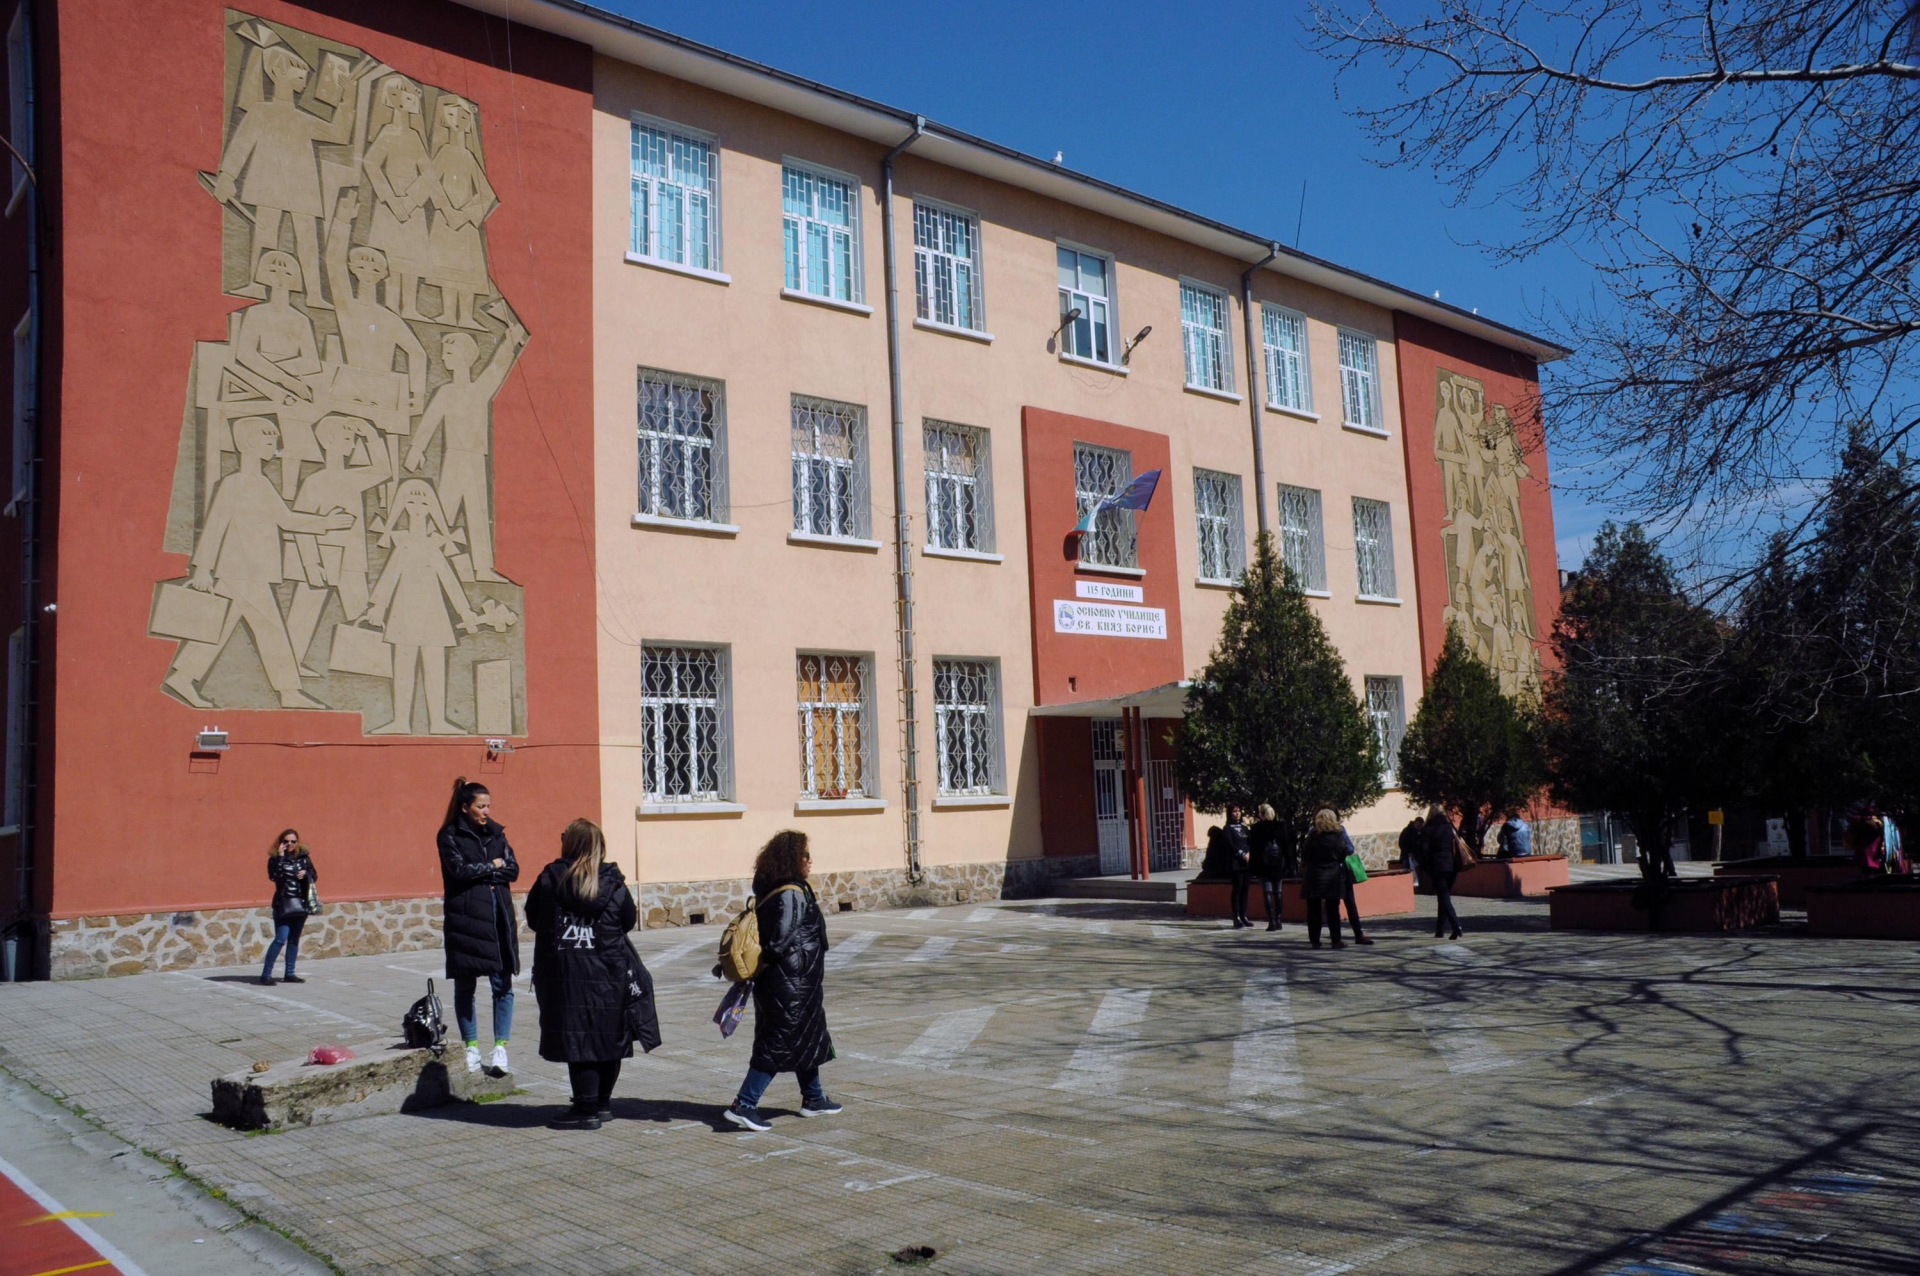 Няма край! Още училища в София и Бургас затворени заради заплахи